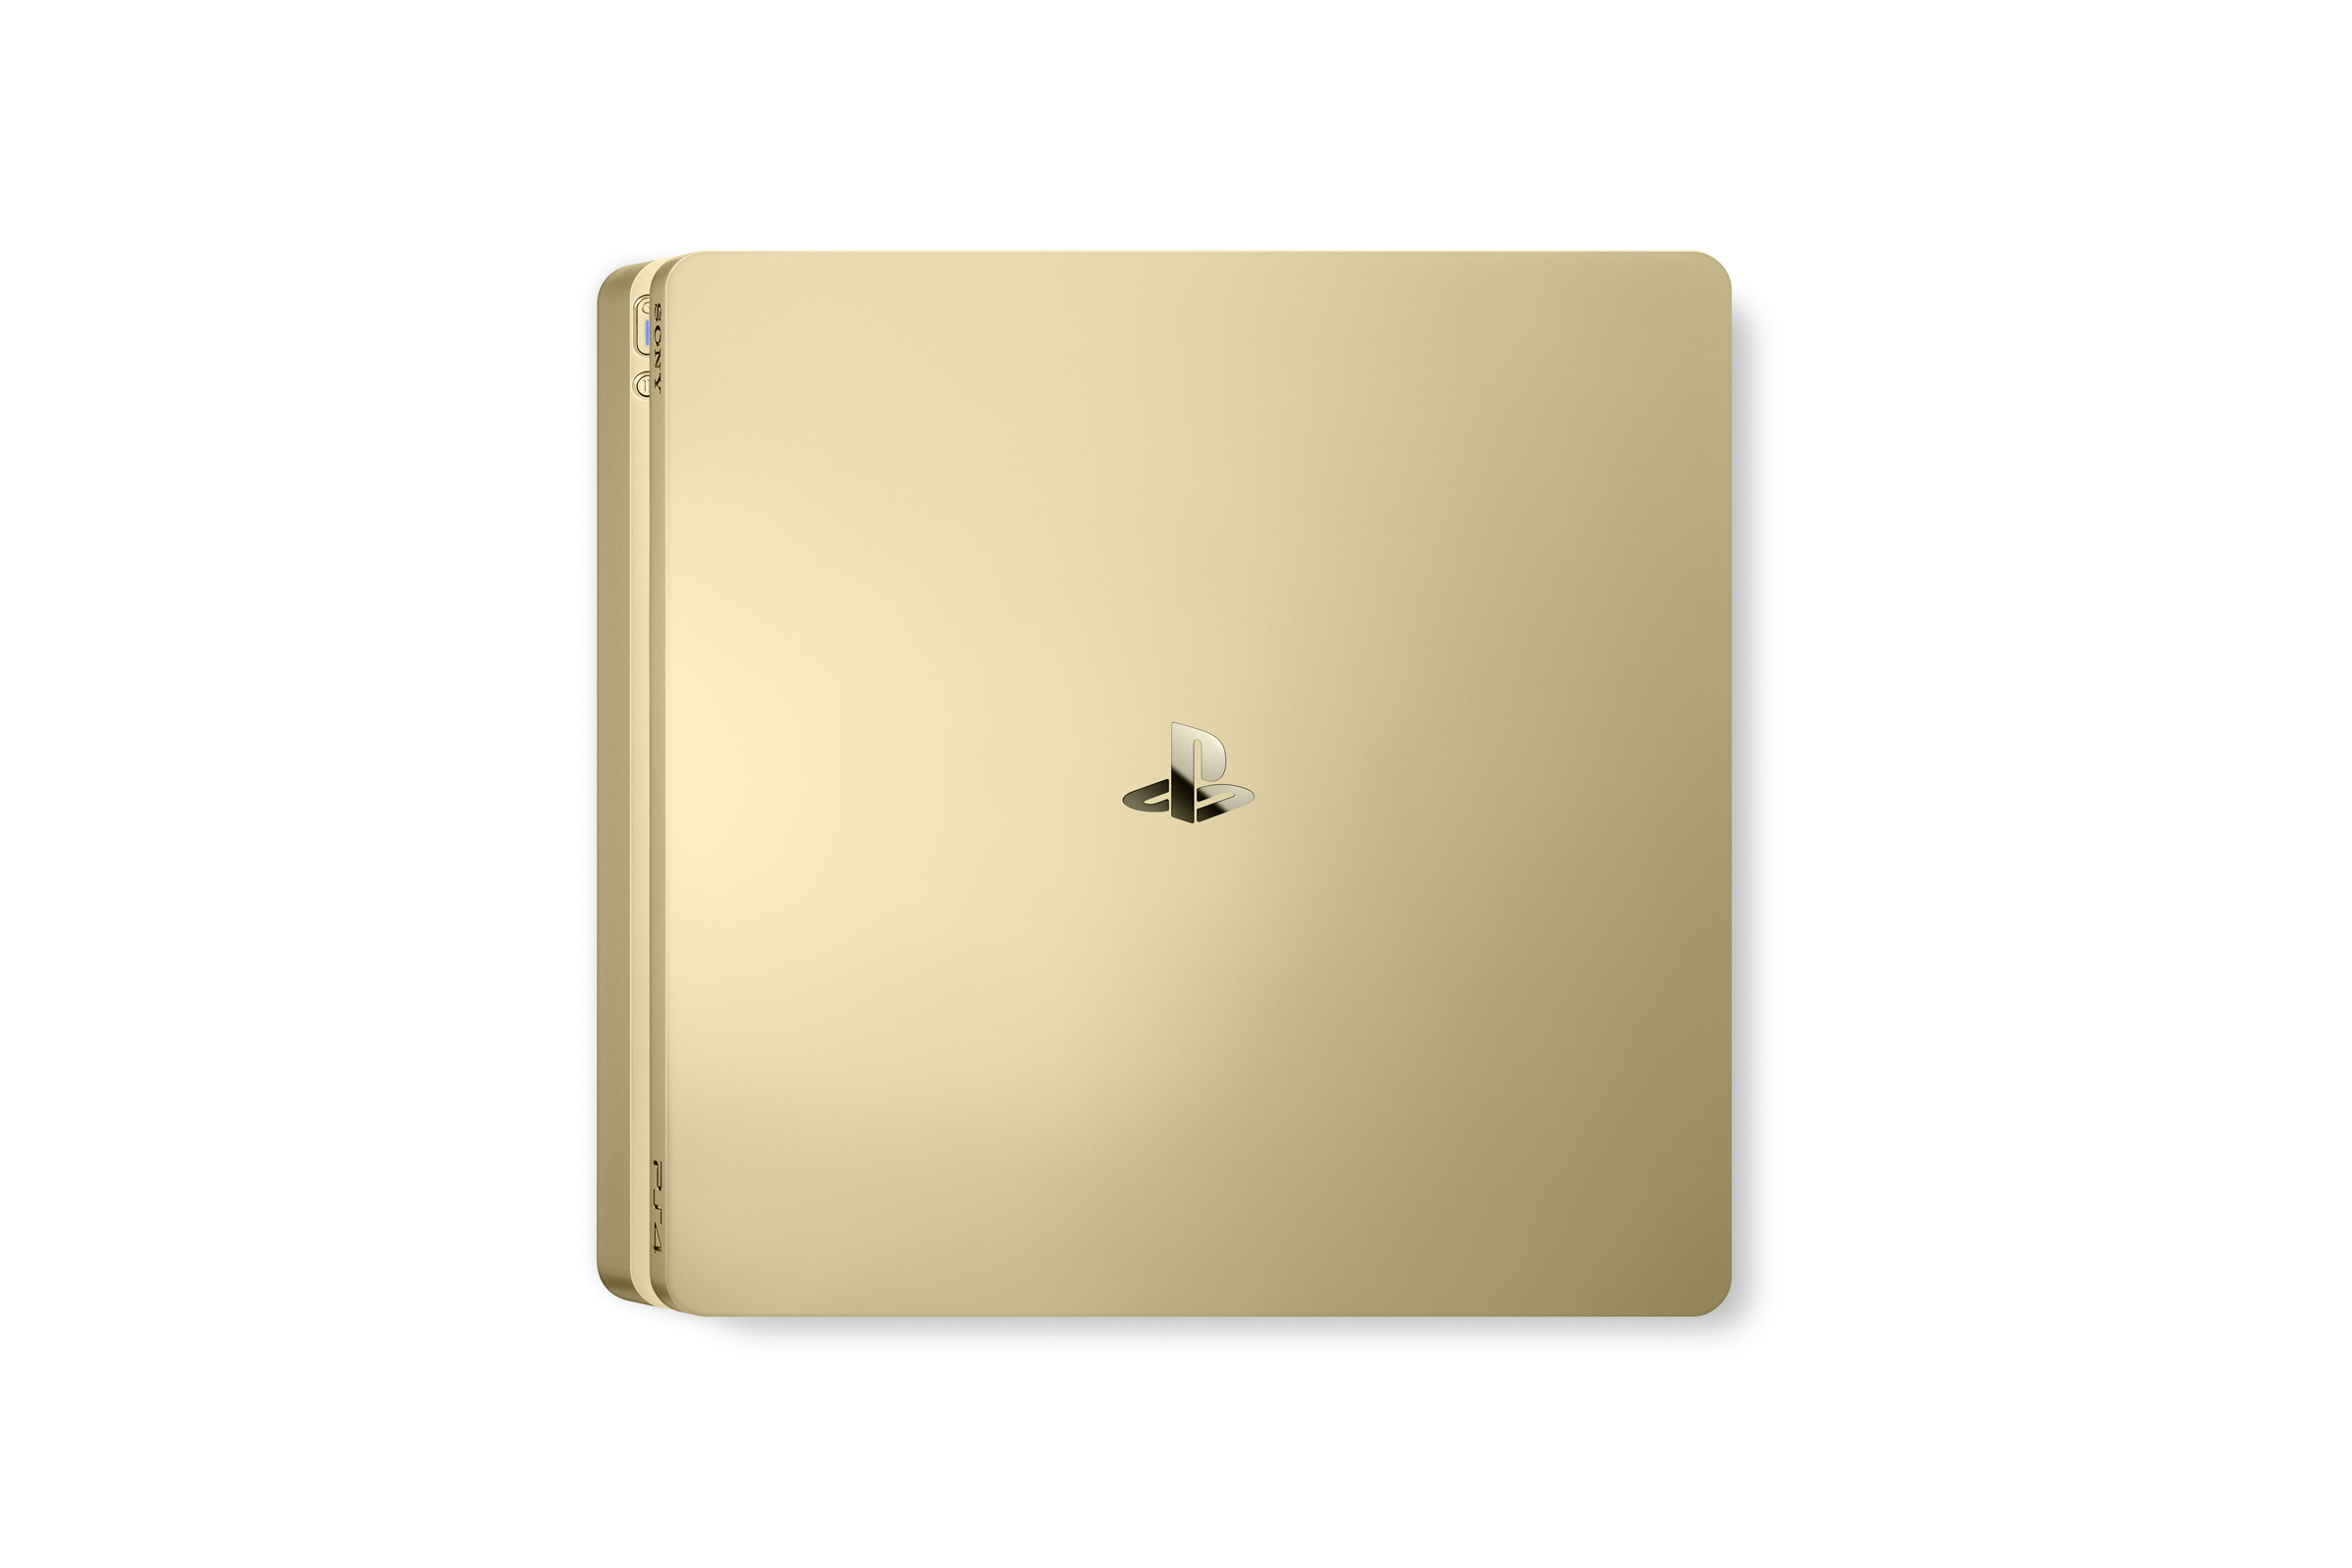 La Playstation 4 Slim Gold et Silver annoncée (7)